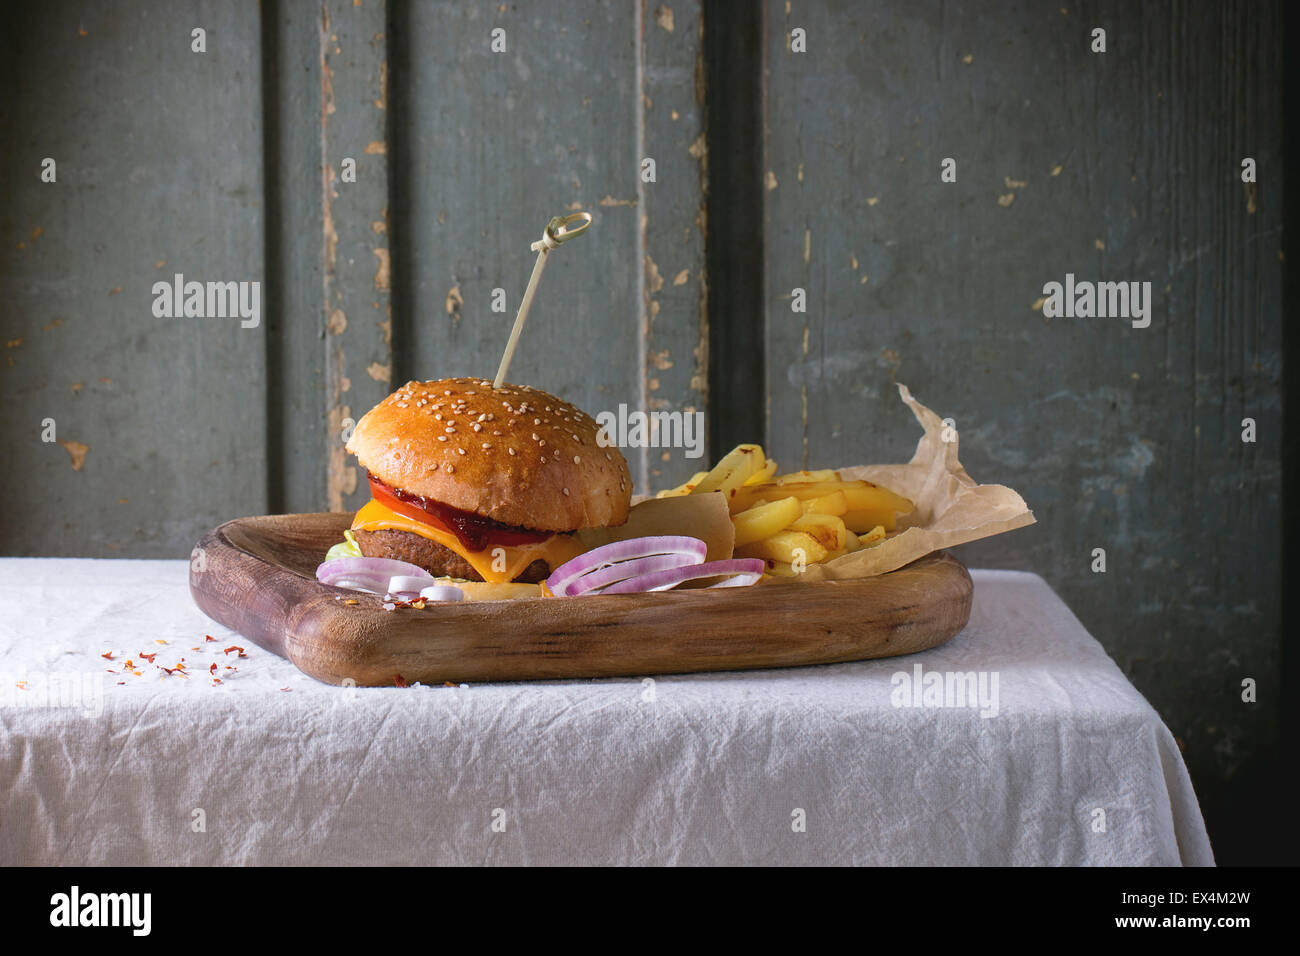 Holzplatte mit frischen hausgemachten Burger und gegrillte Kartoffeln über weiße Tischdecke mit grauem Hintergrund aus Holz. Dunkel rustikalen styl Stockfoto